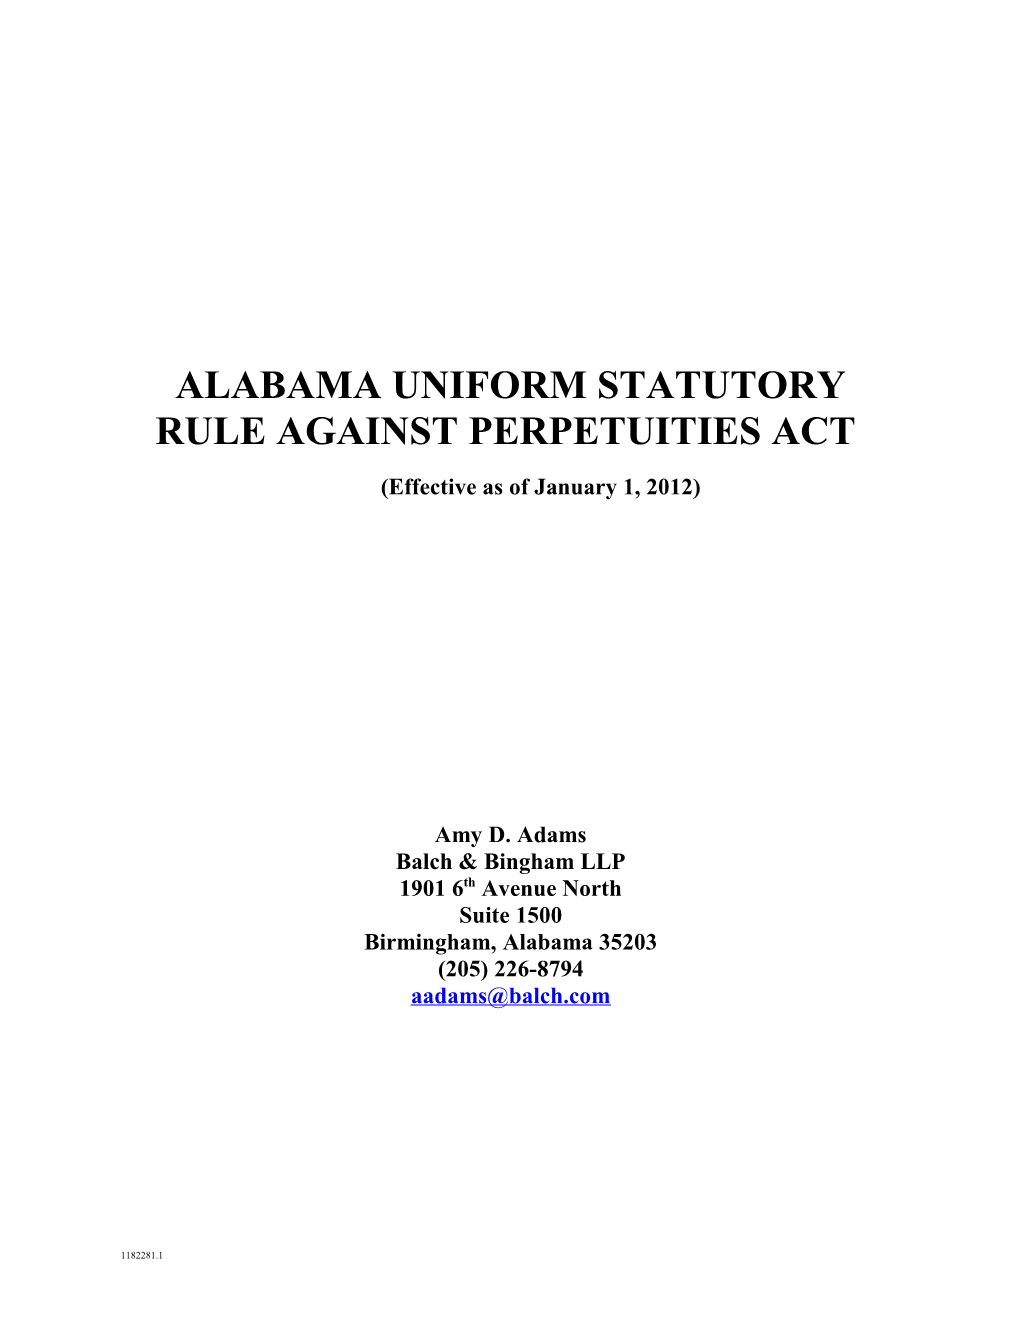 Alabama Uniform Statutory Rule Against Perpetuities Act